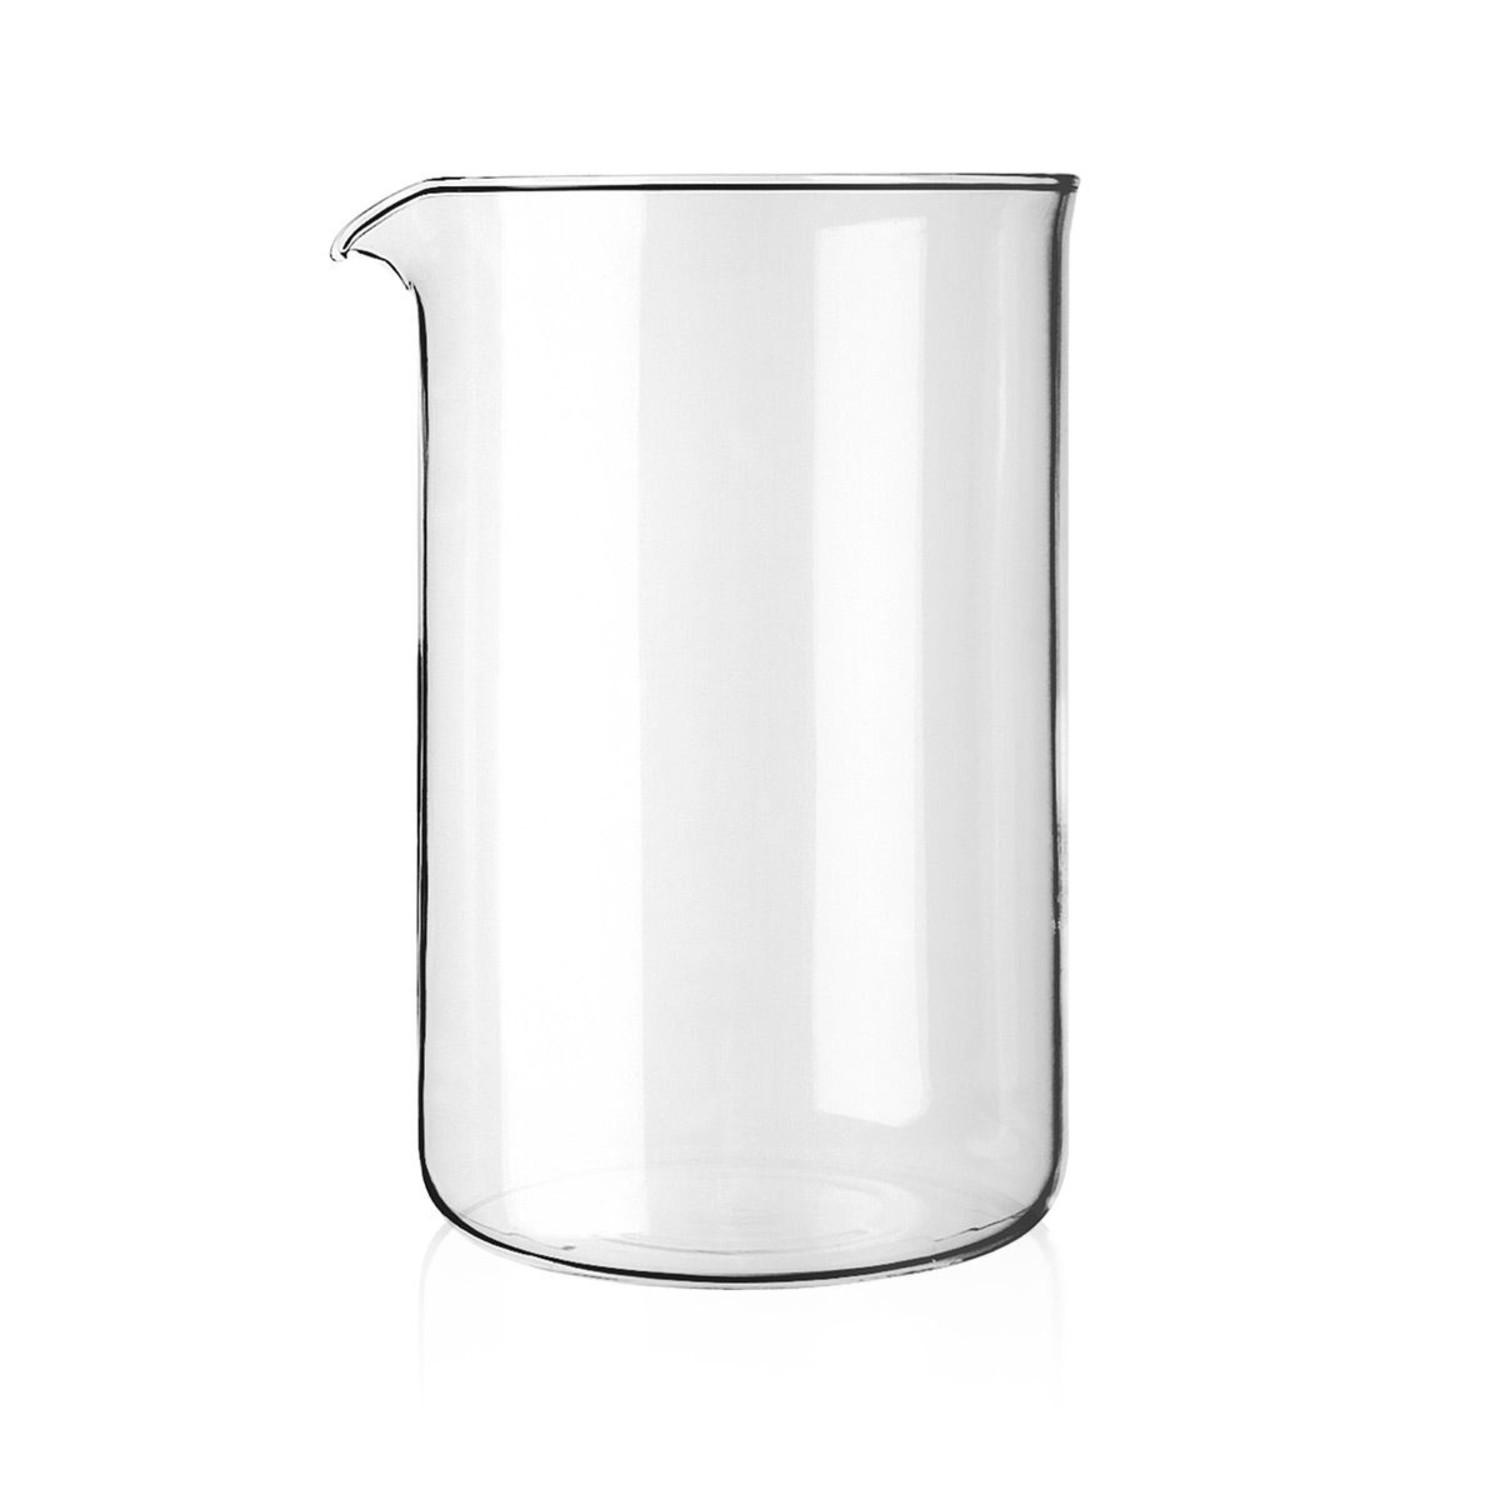 https://cdn.shoplightspeed.com/shops/633447/files/42069687/1500x4000x3/bodum-12-cup-bodum-french-press-replacement-beaker.jpg